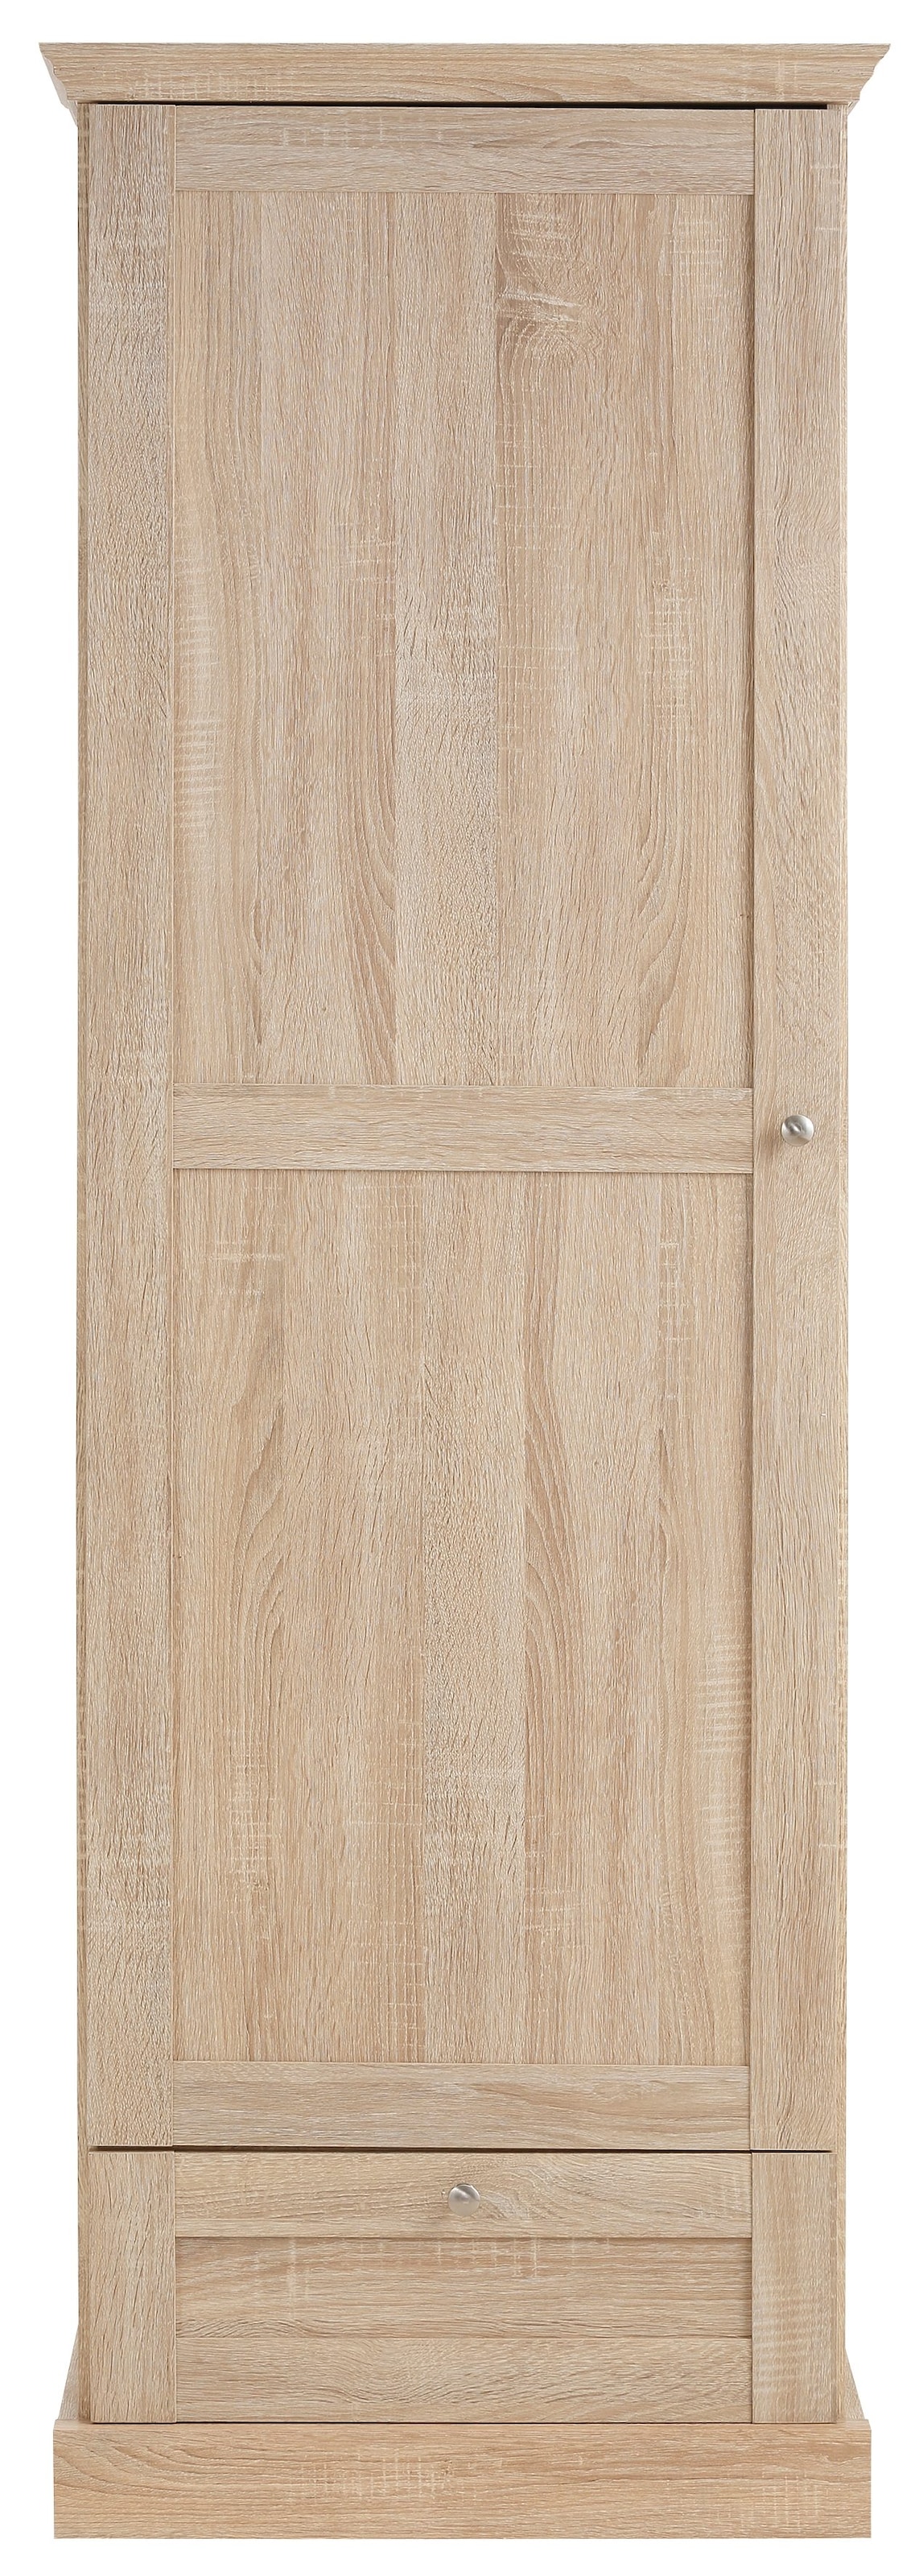 Home affaire Garderobenschrank »Binz«, mit schöner Holzoptik, mit vielen  Stauraummöglichkeiten, Höhe 180 cm auf Raten bestellen